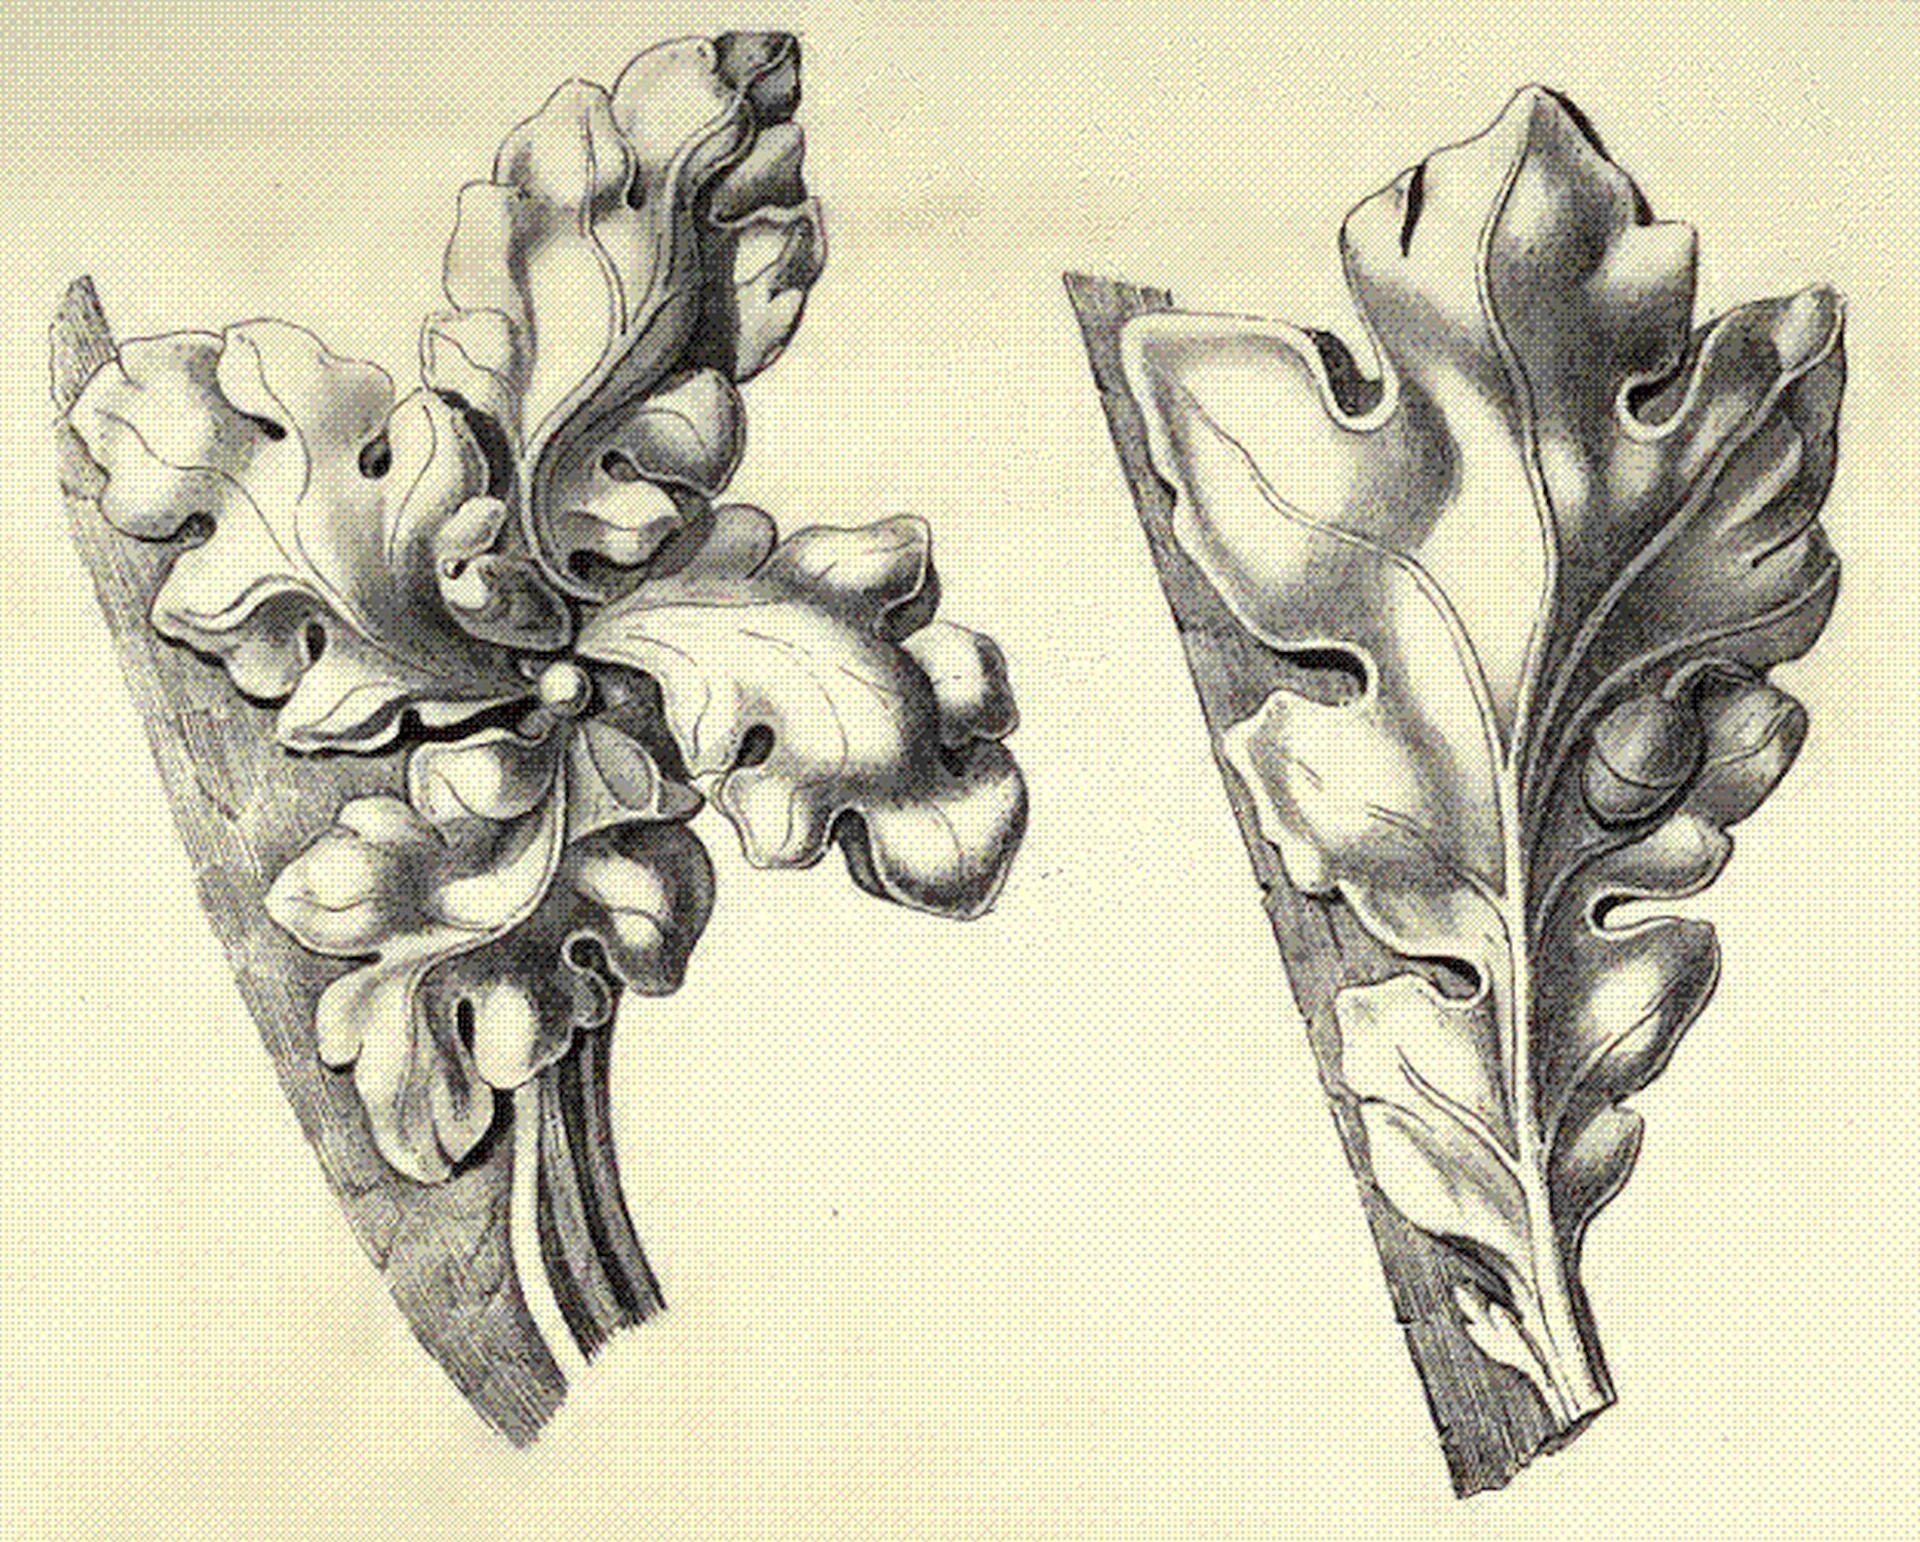 Ilustracja przedstawiająca ornament: czołganki (żabki). Element dekoracyjny naszkicowany jest czarnym kolorem bez wypełenień.